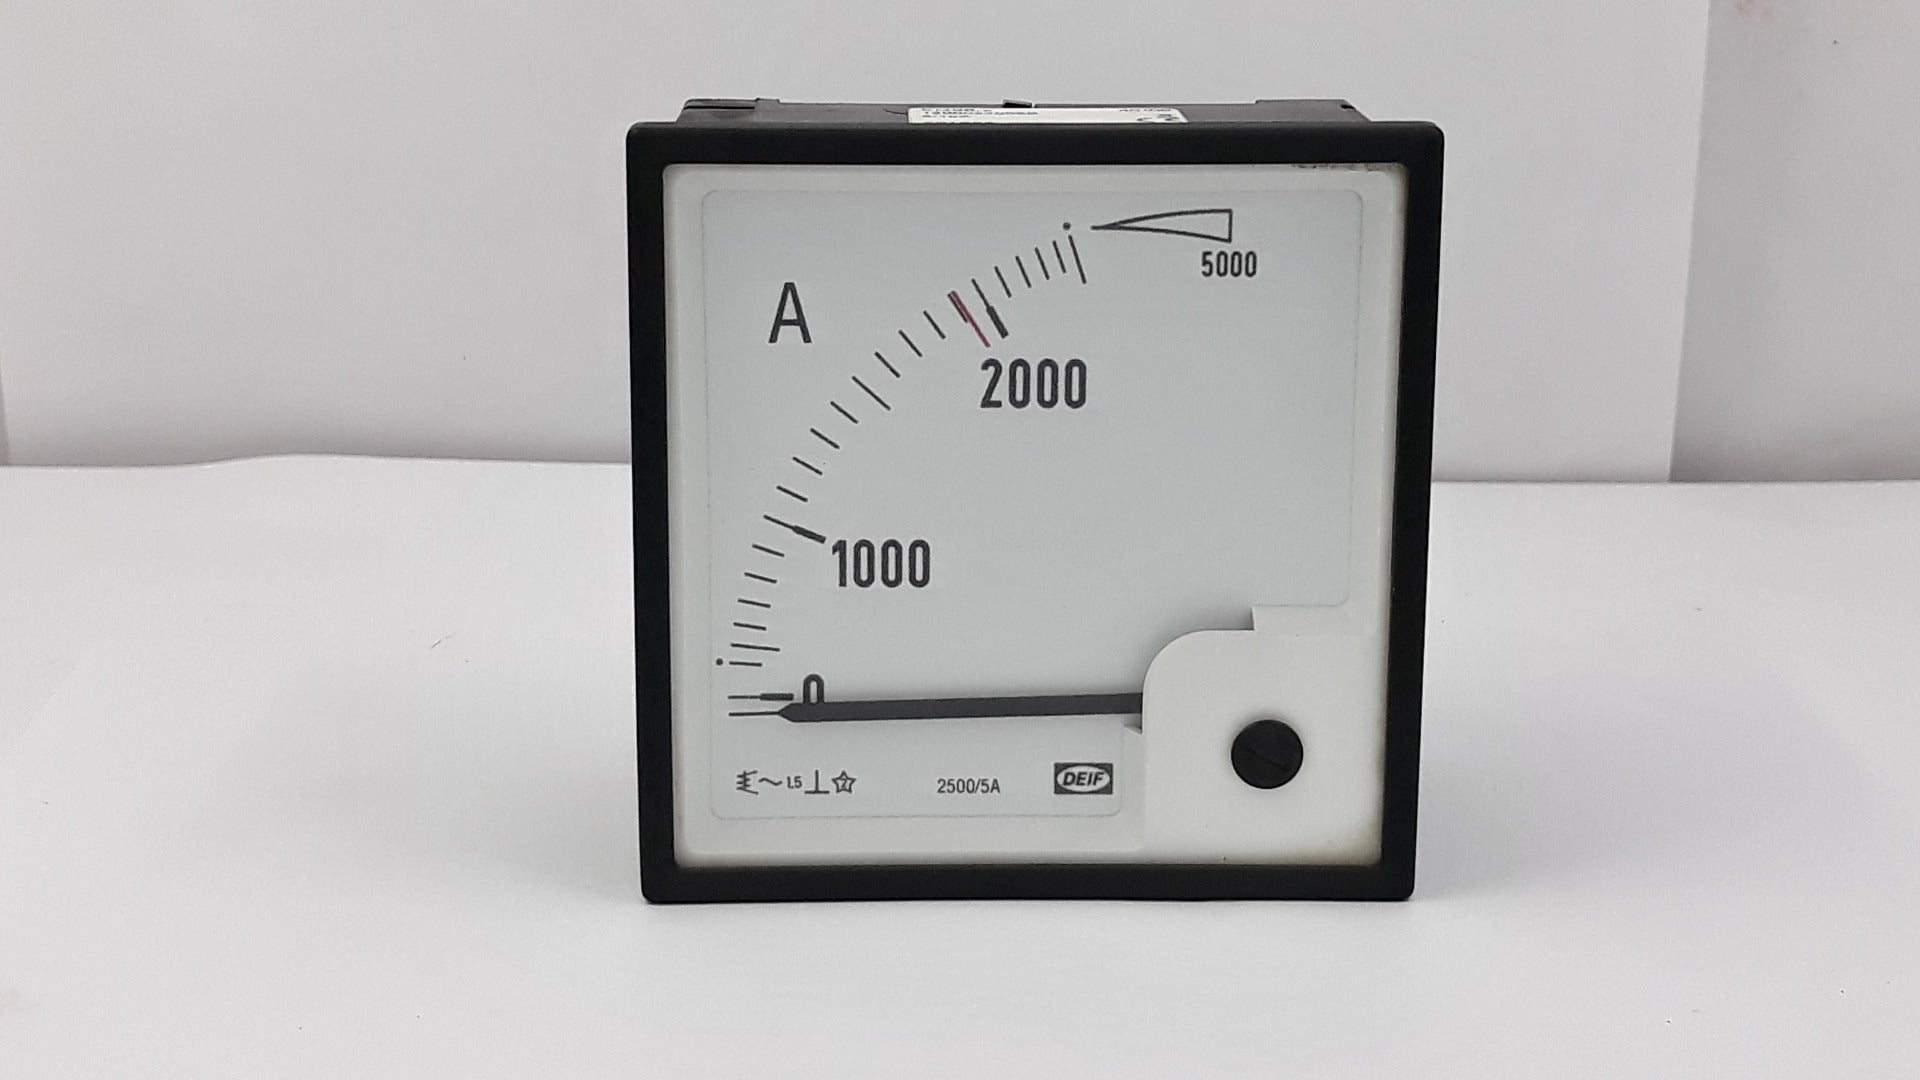 Deif eq96-x analog ammeter 1200022005b 